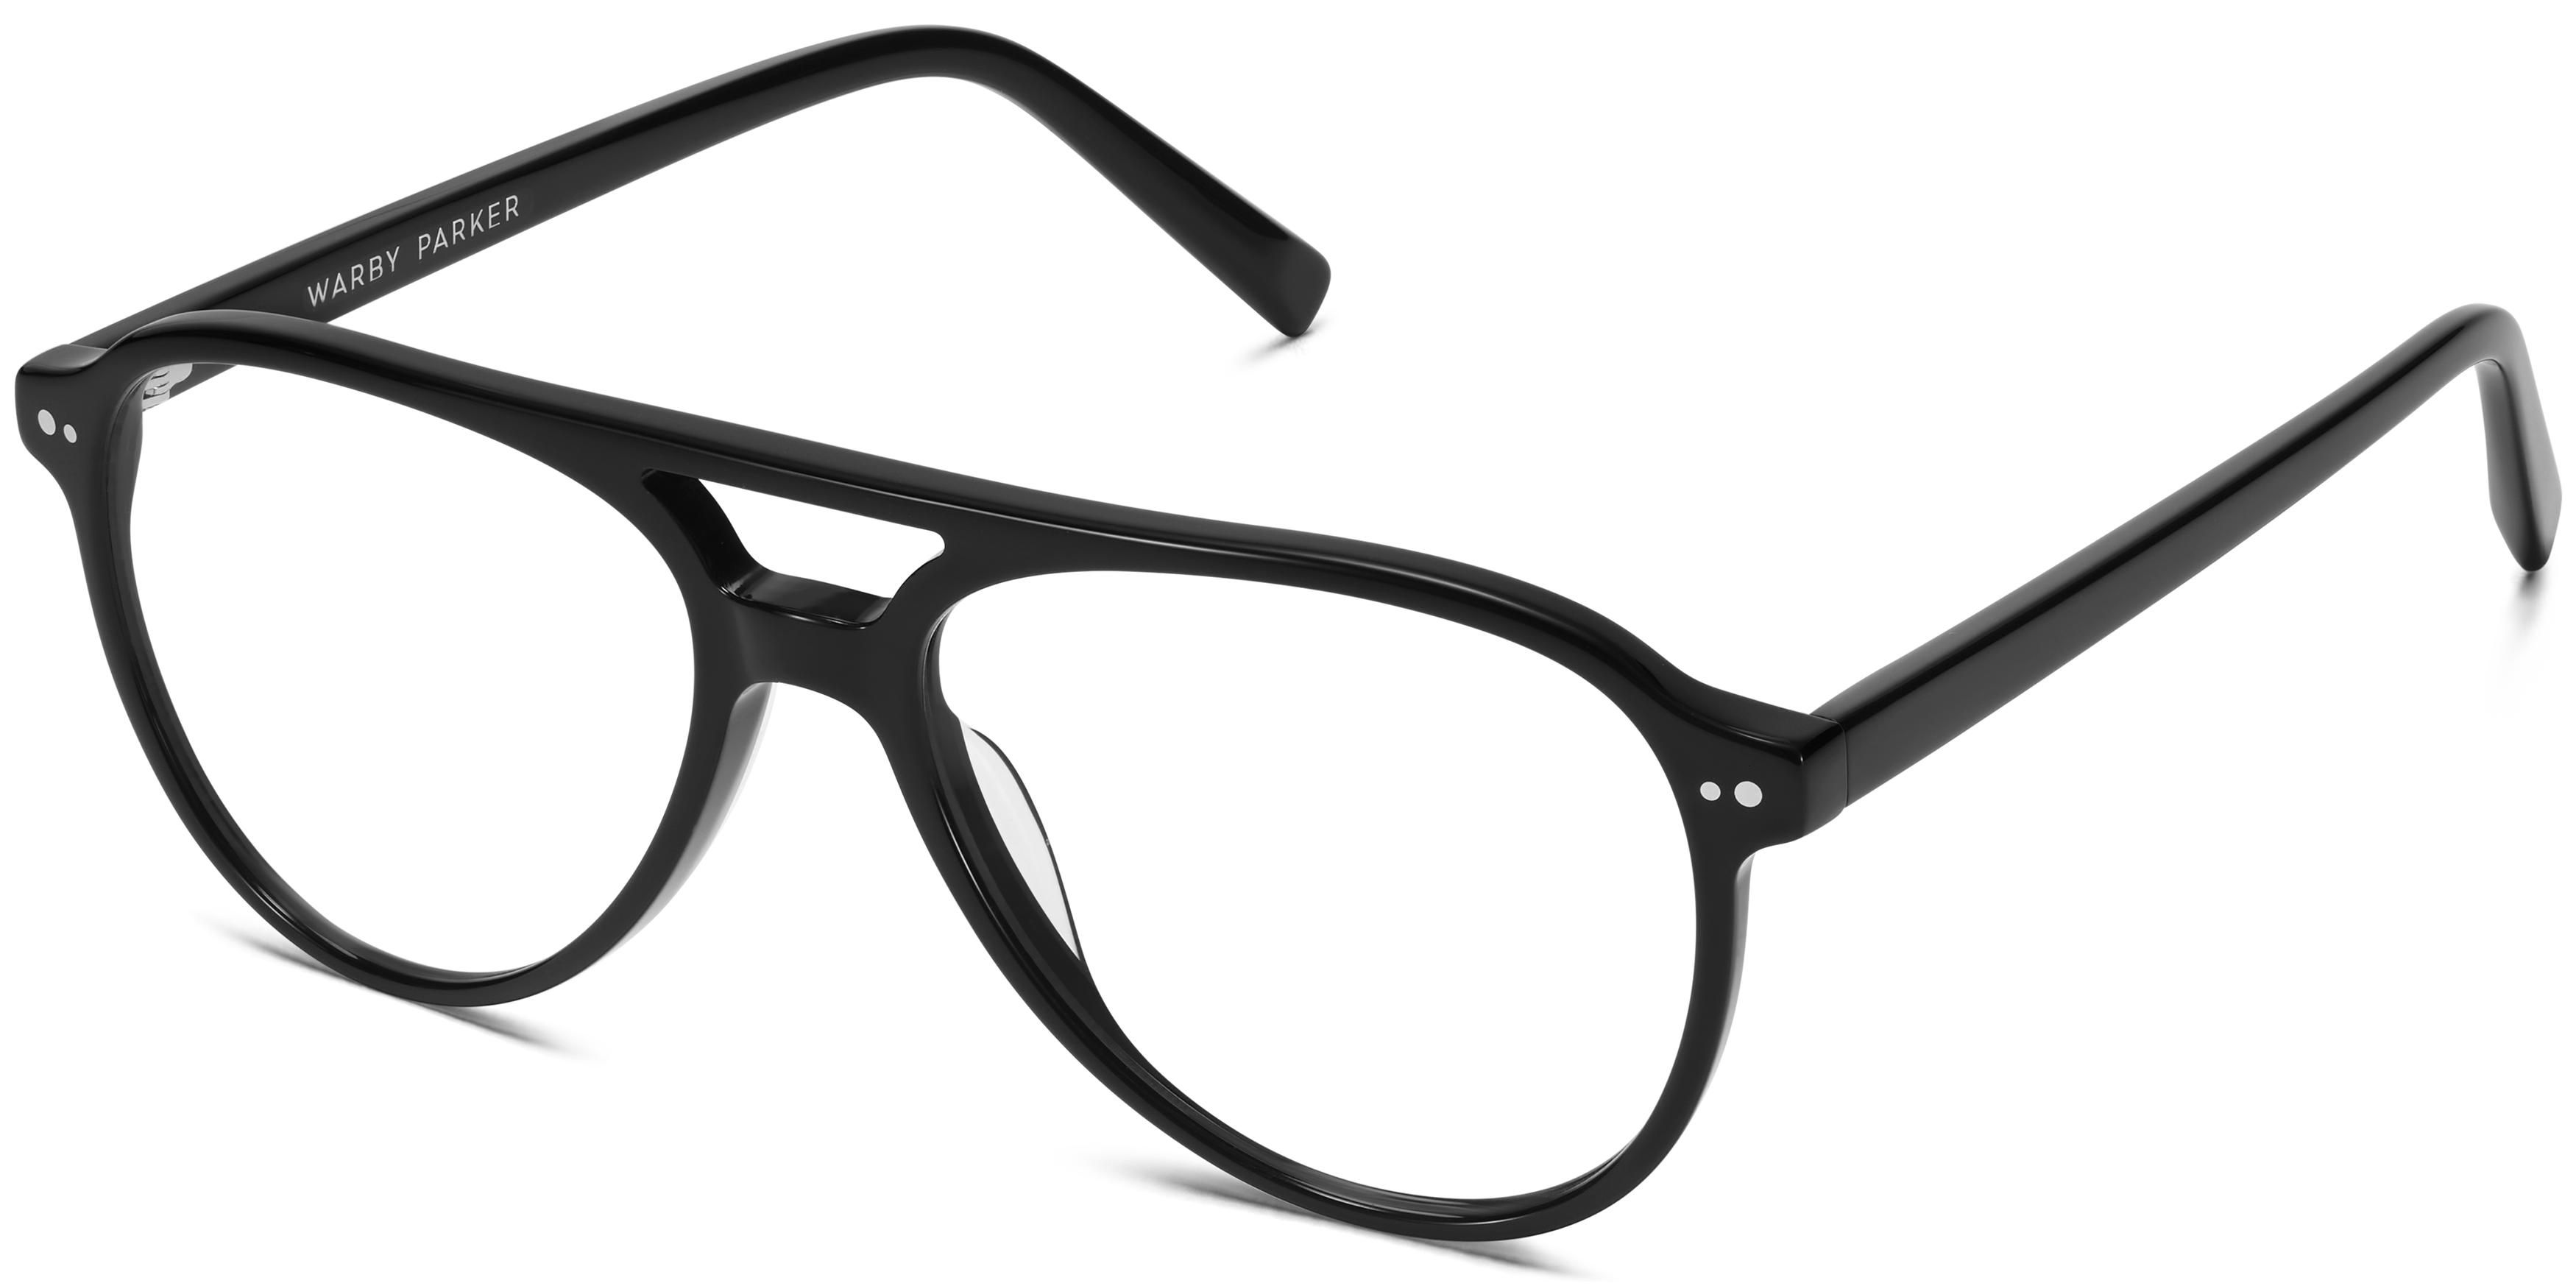 Braden Eyeglasses in Jet Black | Warby Parker | Warby Parker (US)